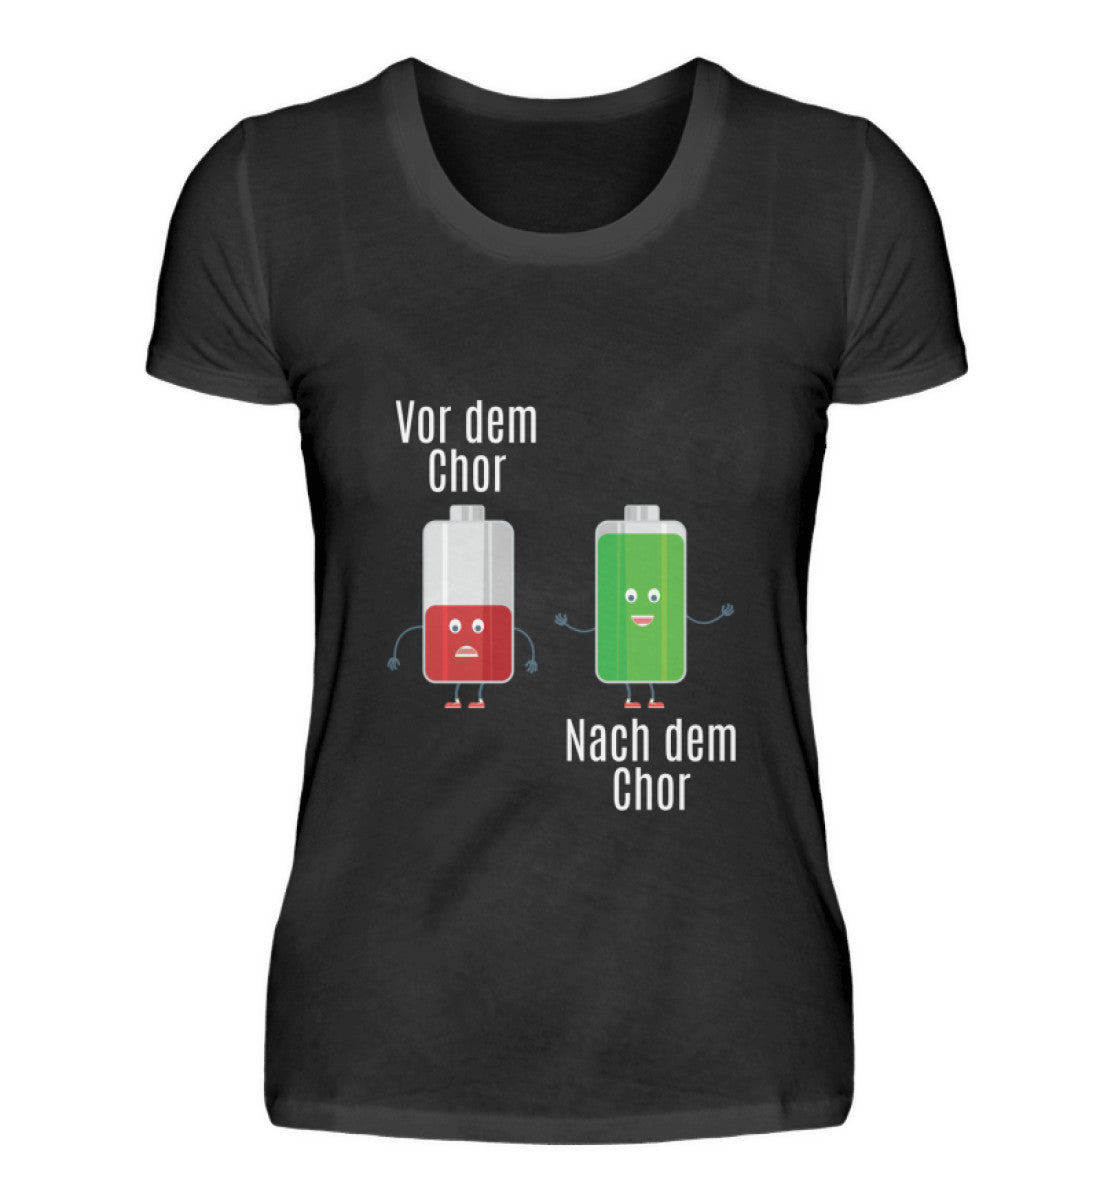 Chor Damen T-Shirt